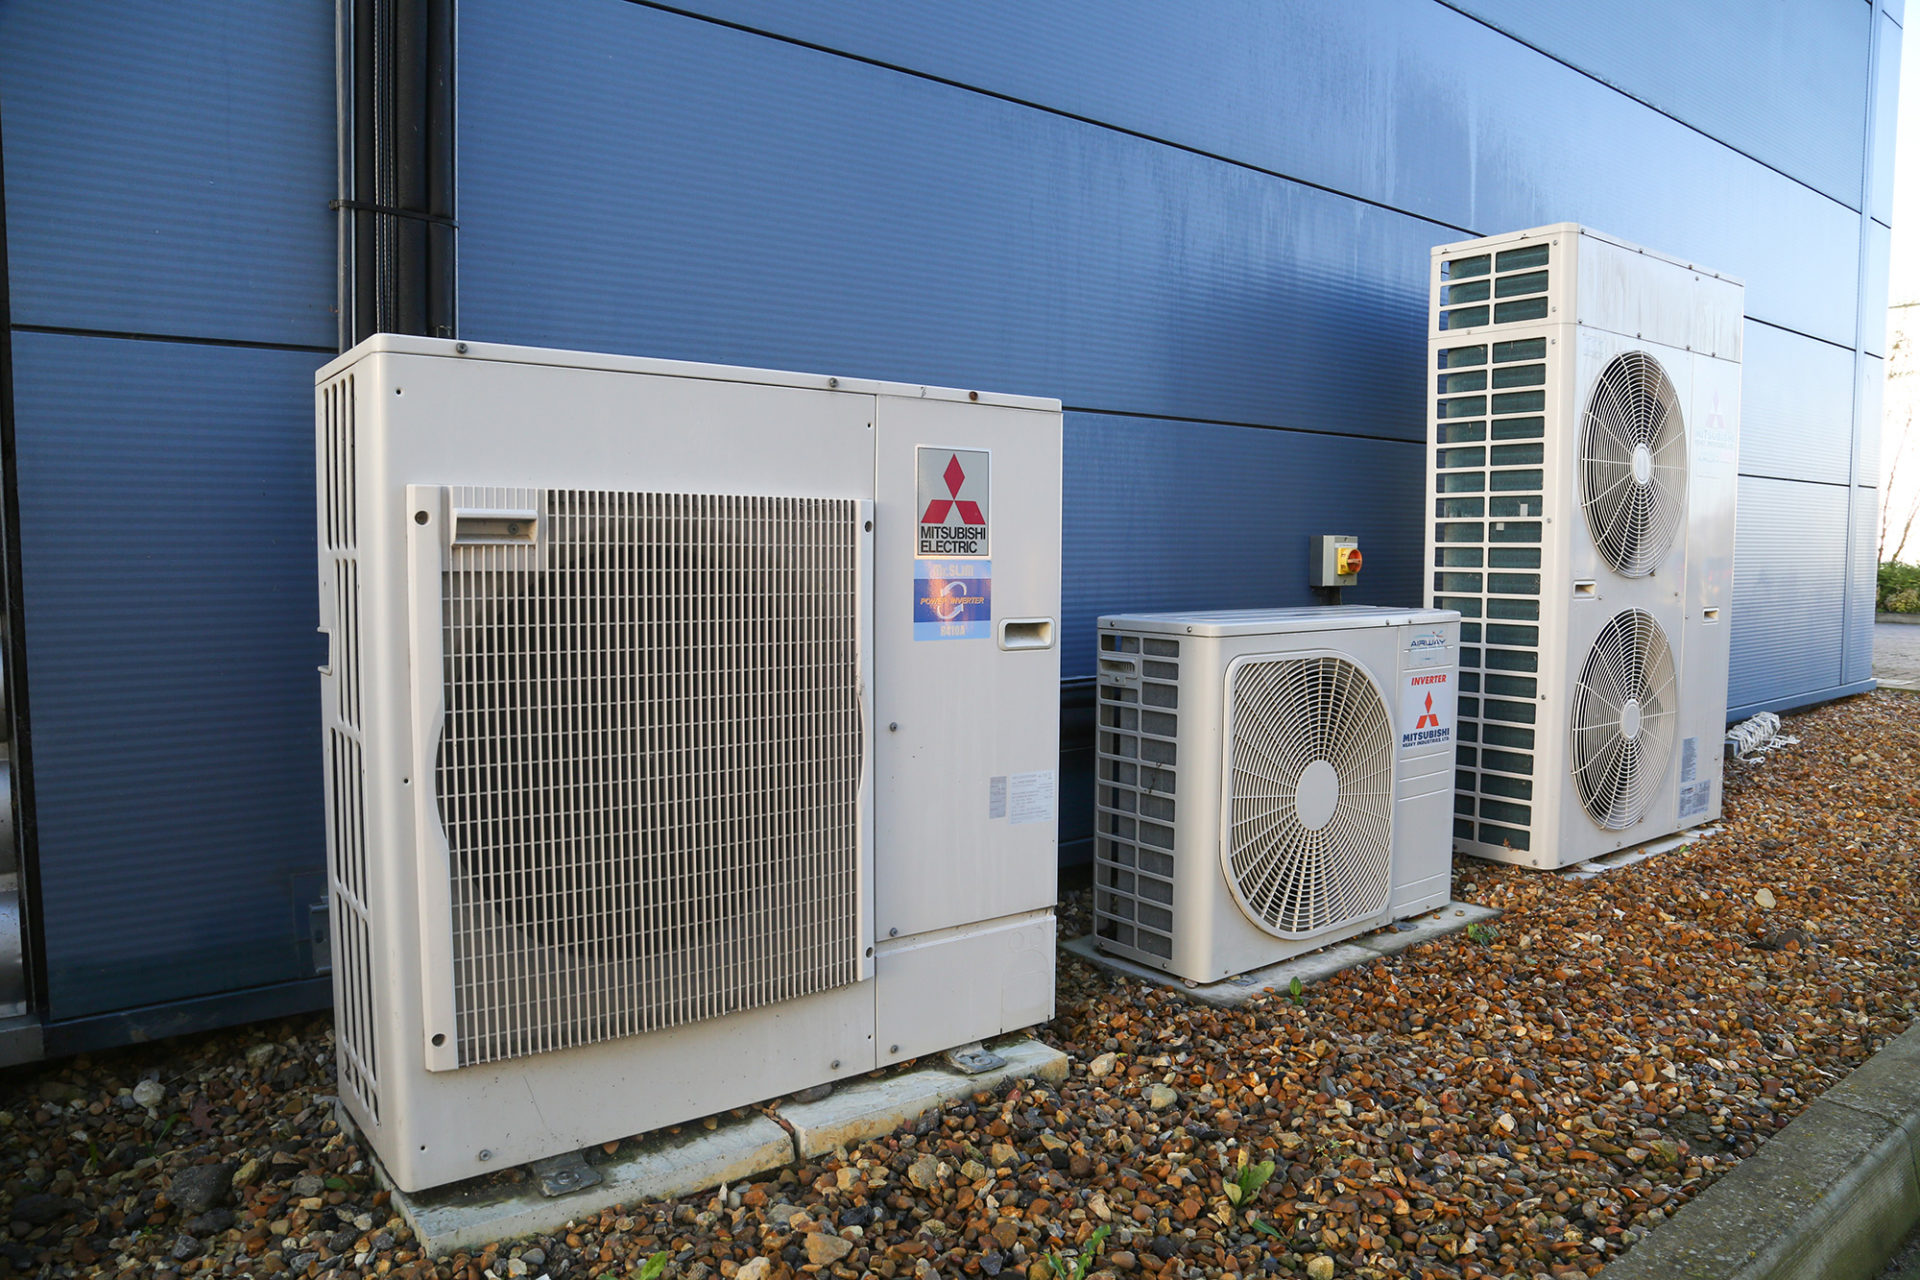 Mitsubishi air conditioning units